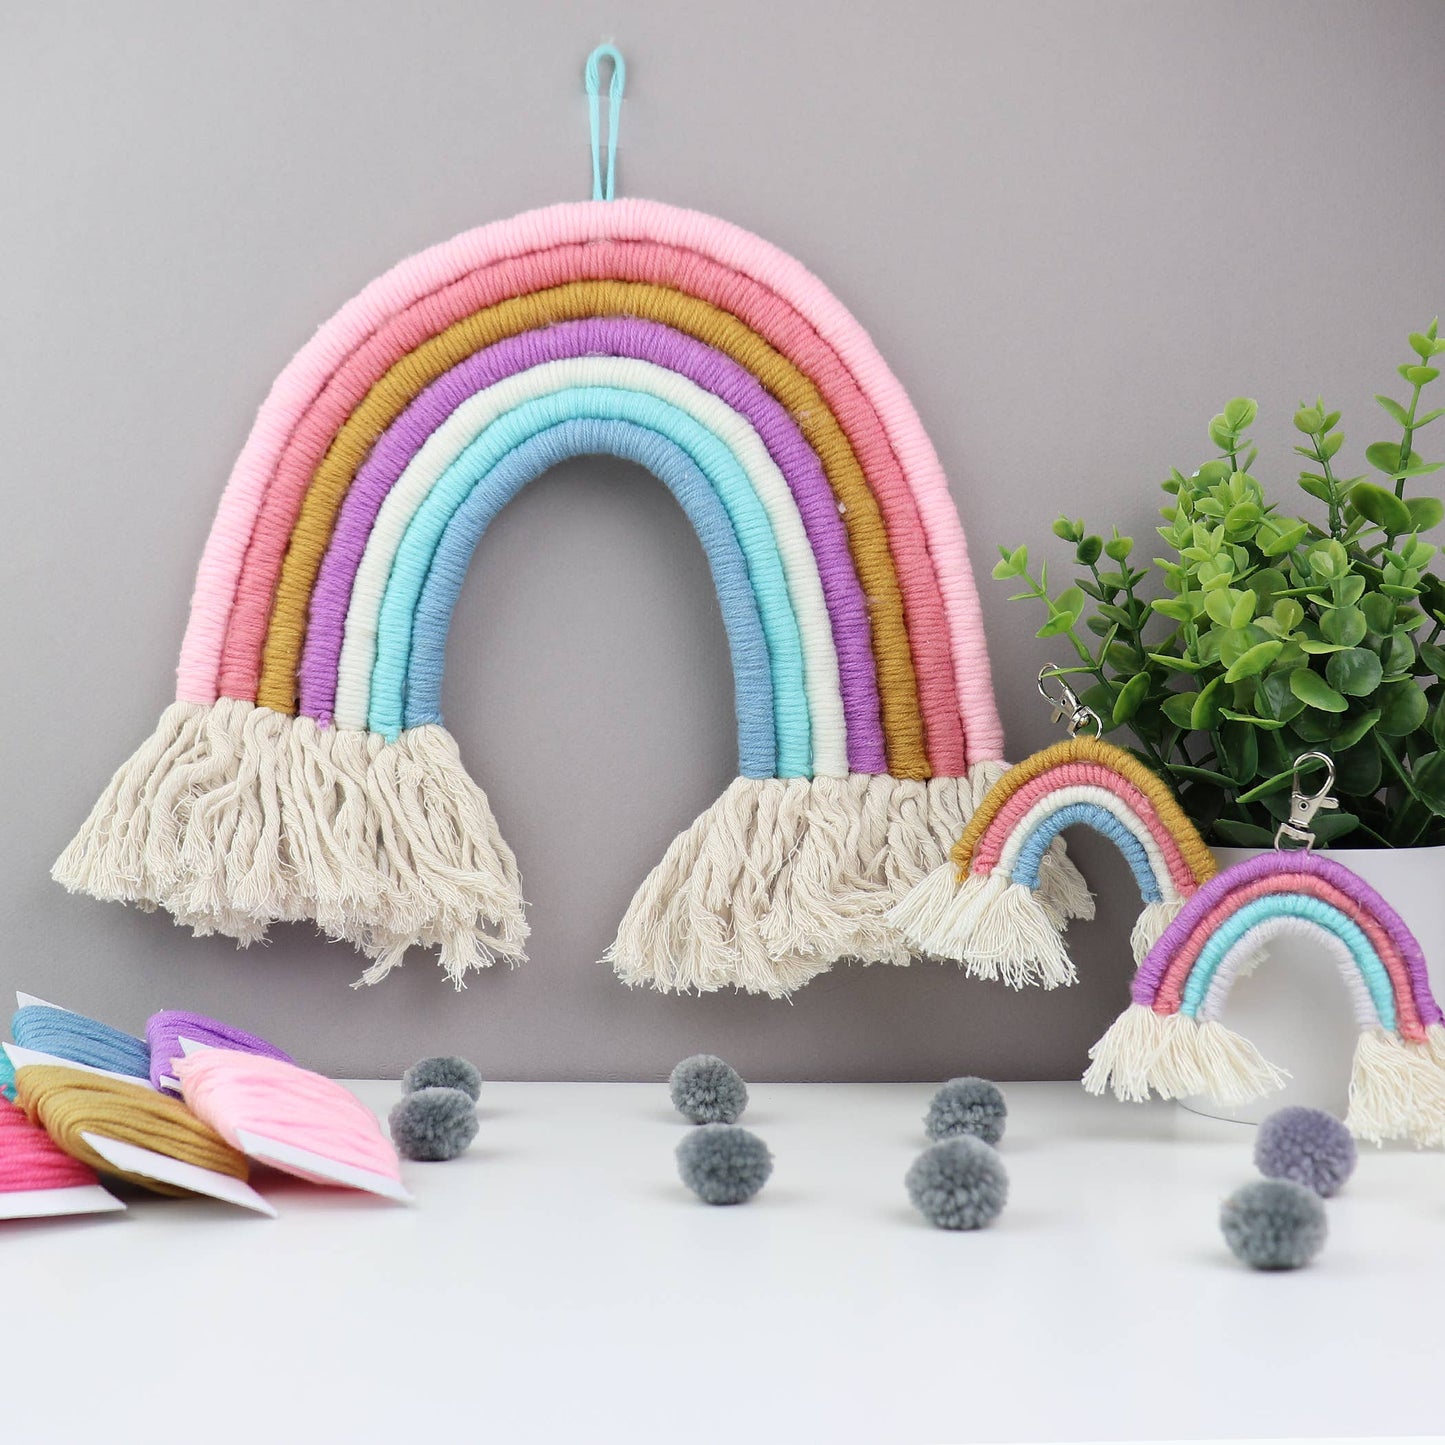 DIY Rainbow Yarn Bedroom Decor